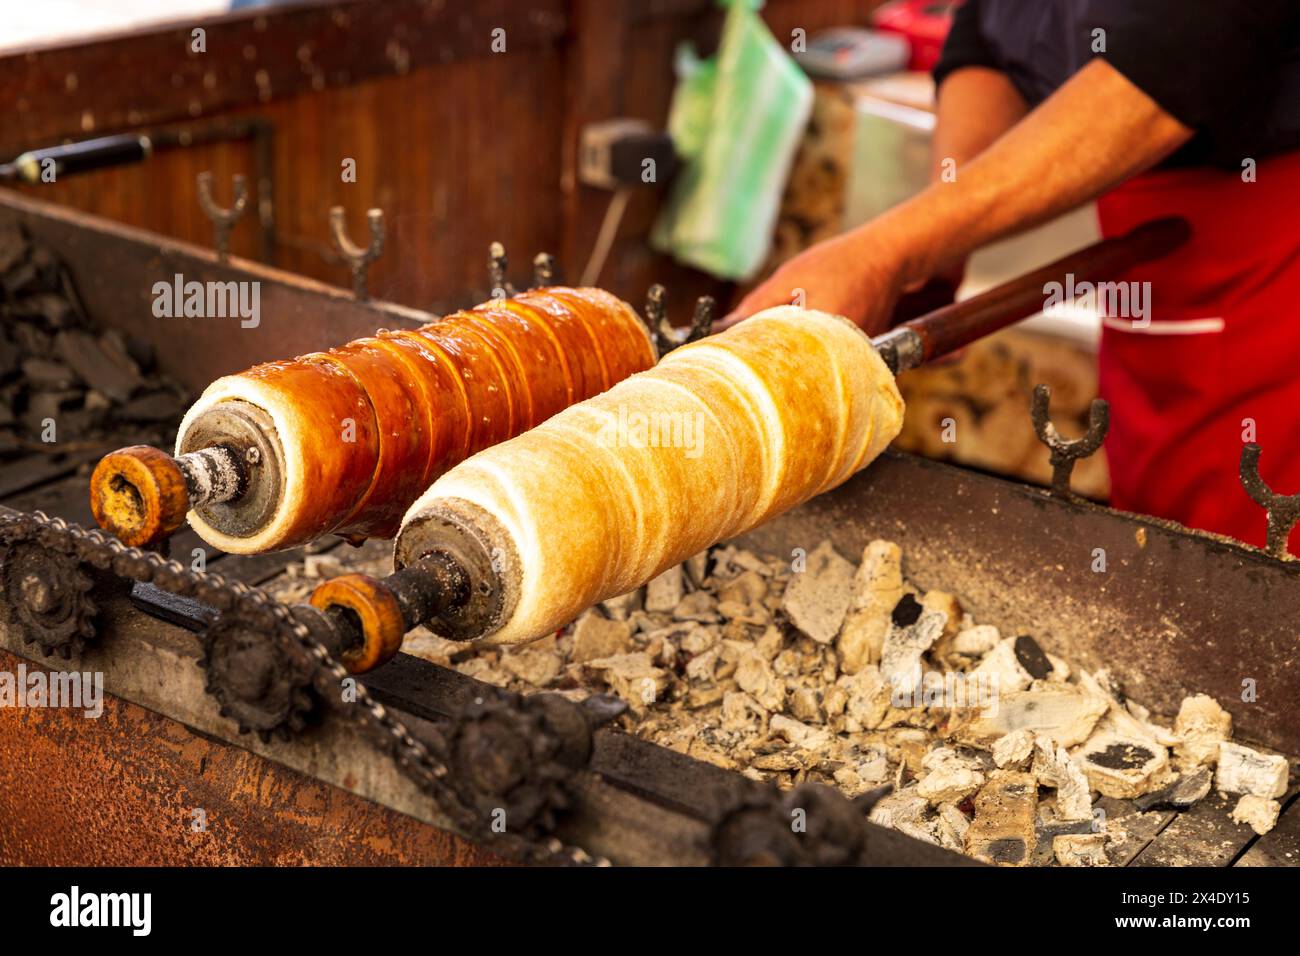 Rumänien, Transsilvanien, A Alba Iulia. Donuts mit Brot, die über Kohlen geröstet werden. Stockfoto